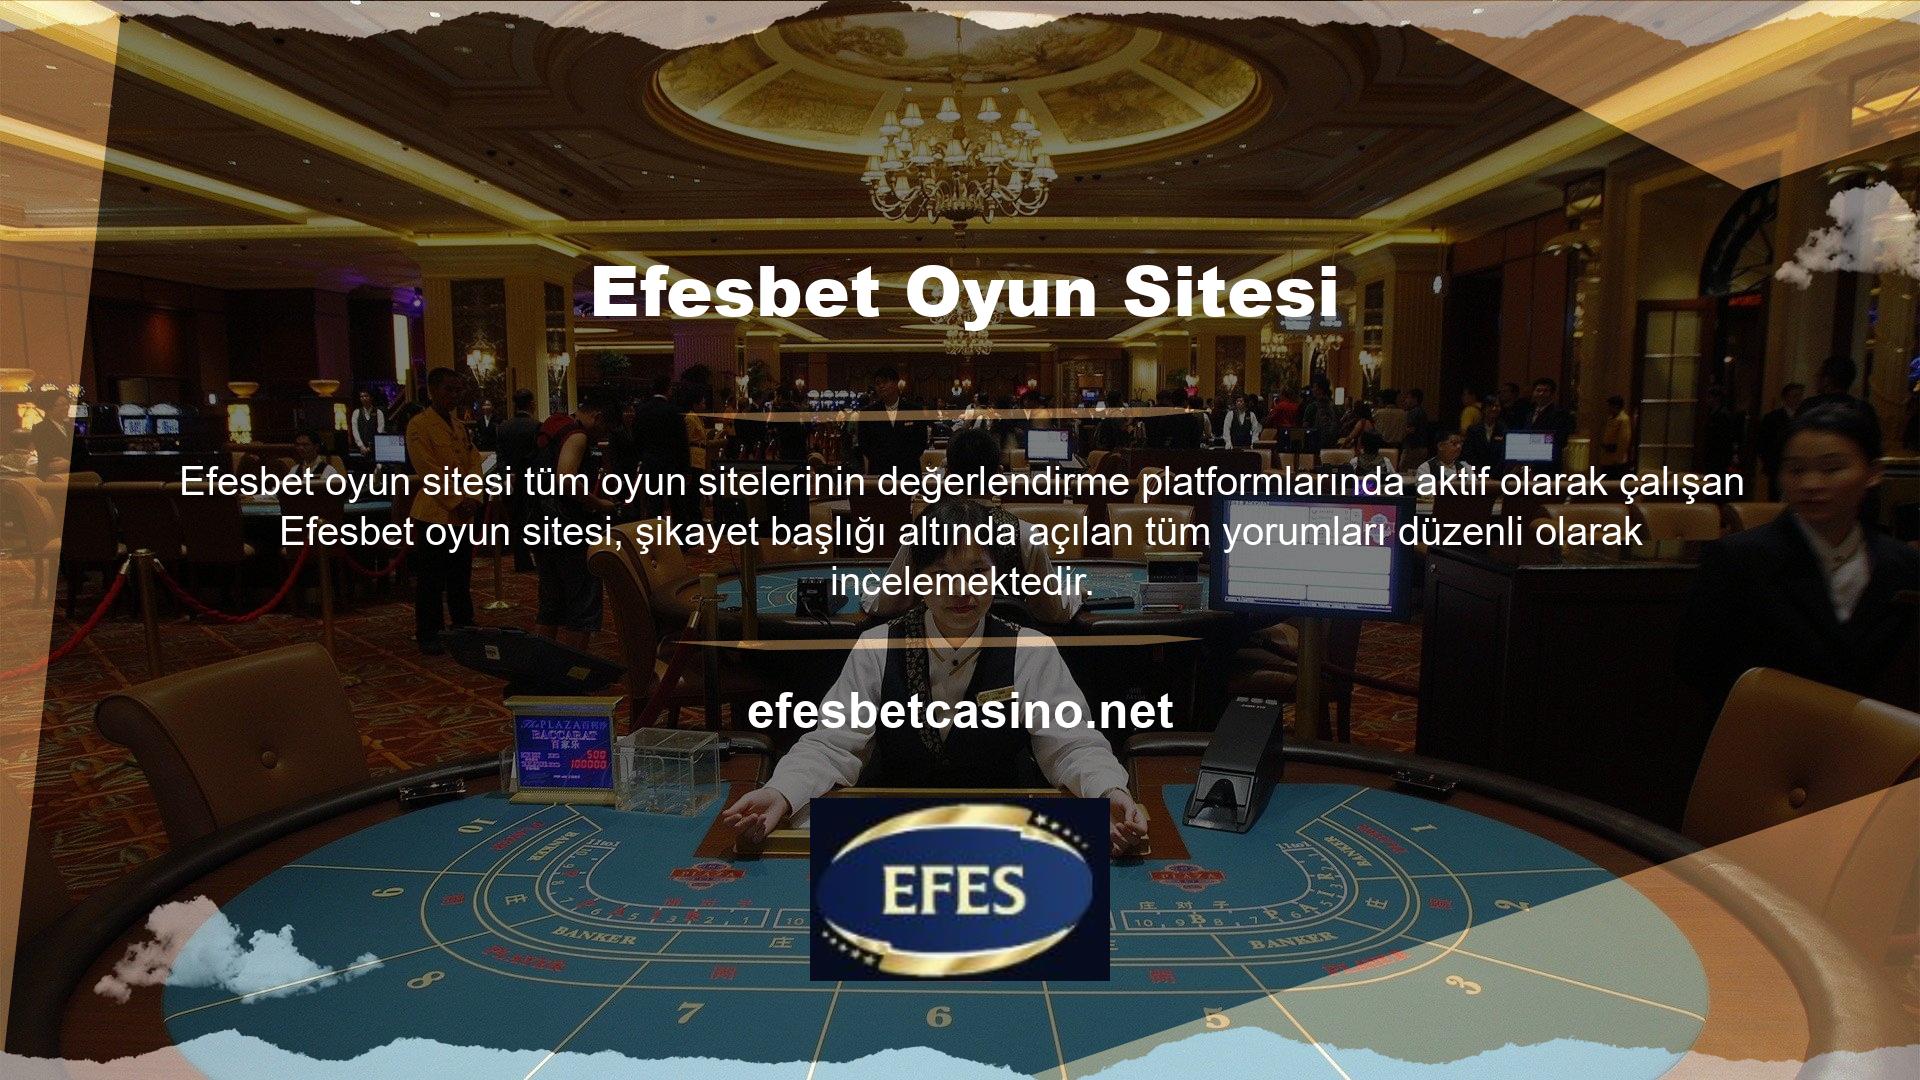 Bu sayede bahis sitesi Efesbet, mağdur olan tüm kullanıcıları siteden çıkararak kullanıcı memnuniyetini artırmaktadır